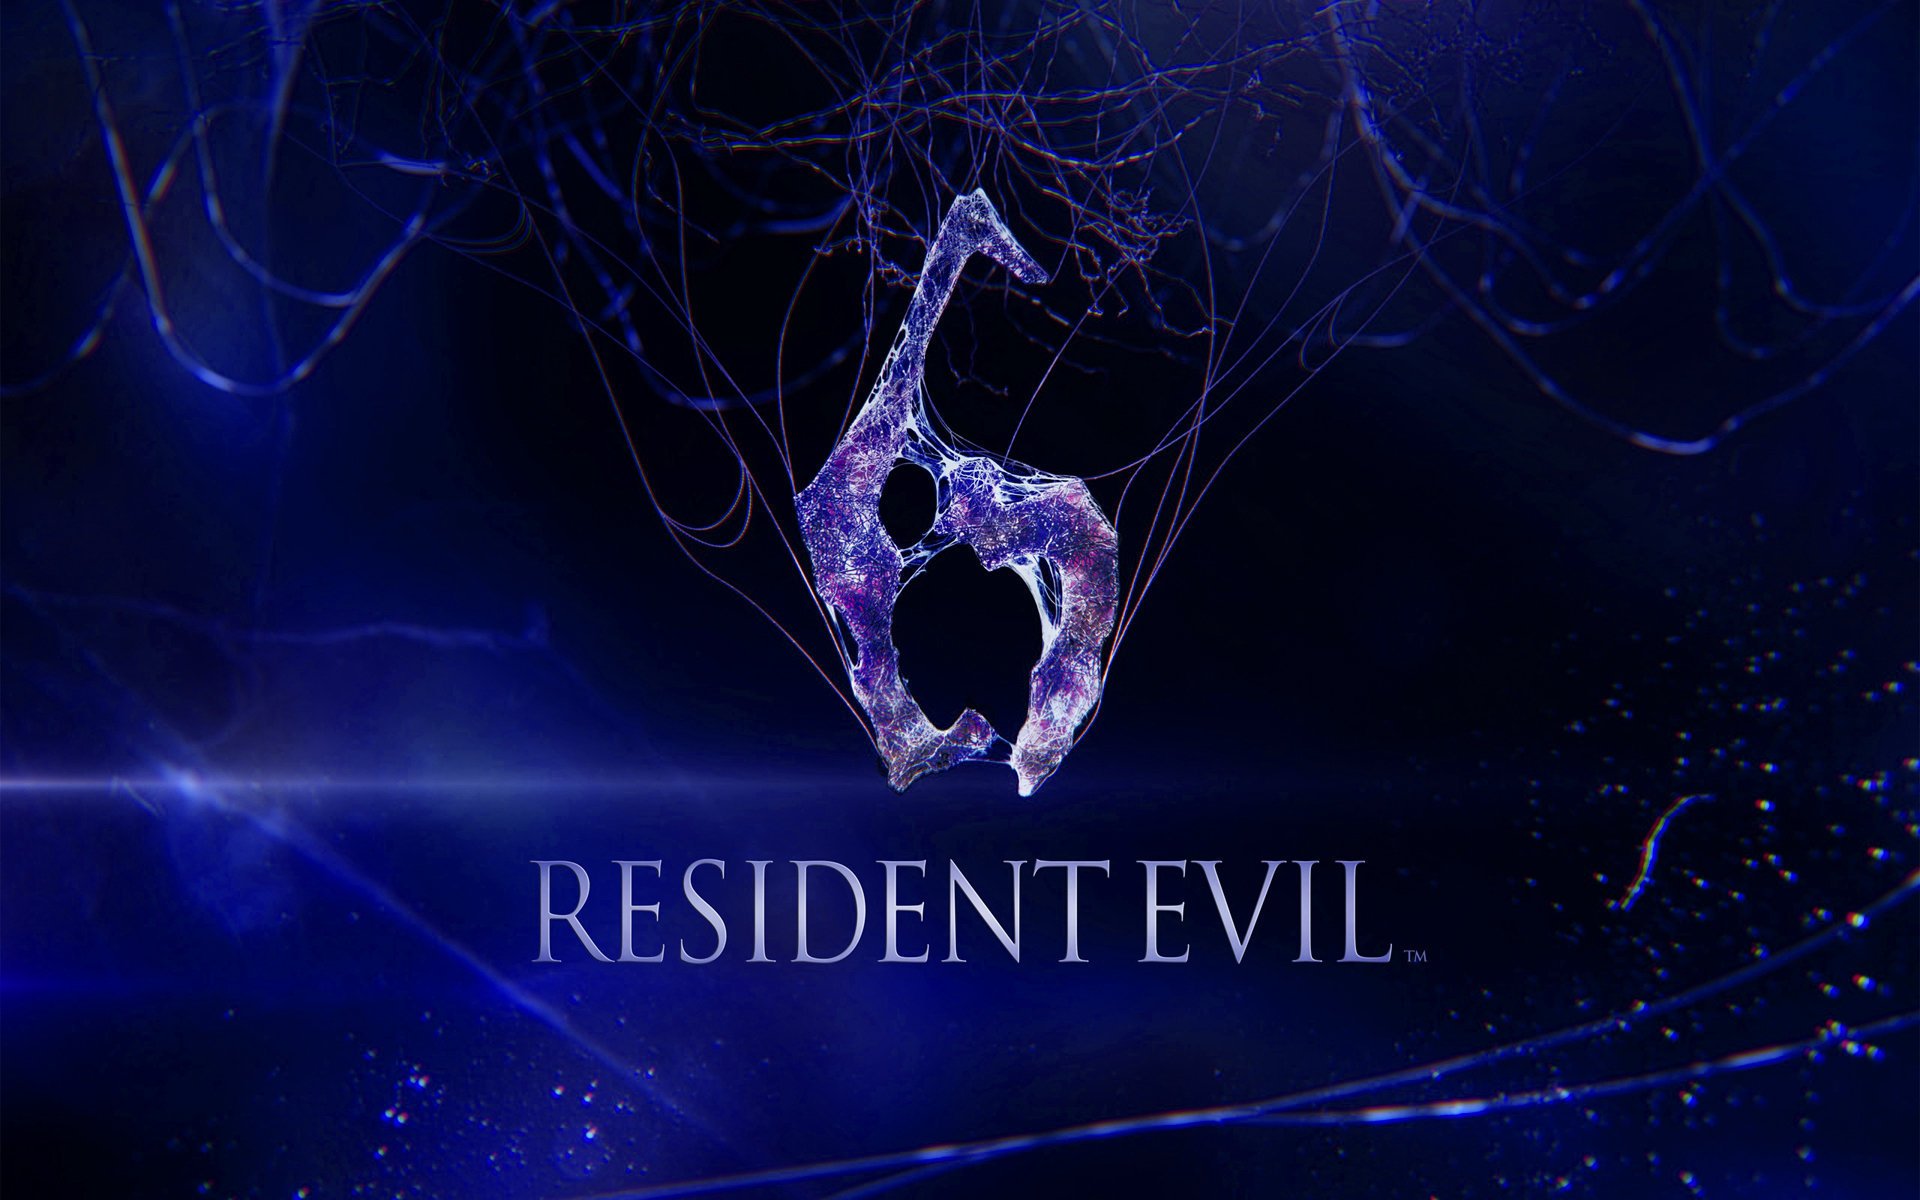 Resident Evil 6 (Wallpaper > Resident Evil)